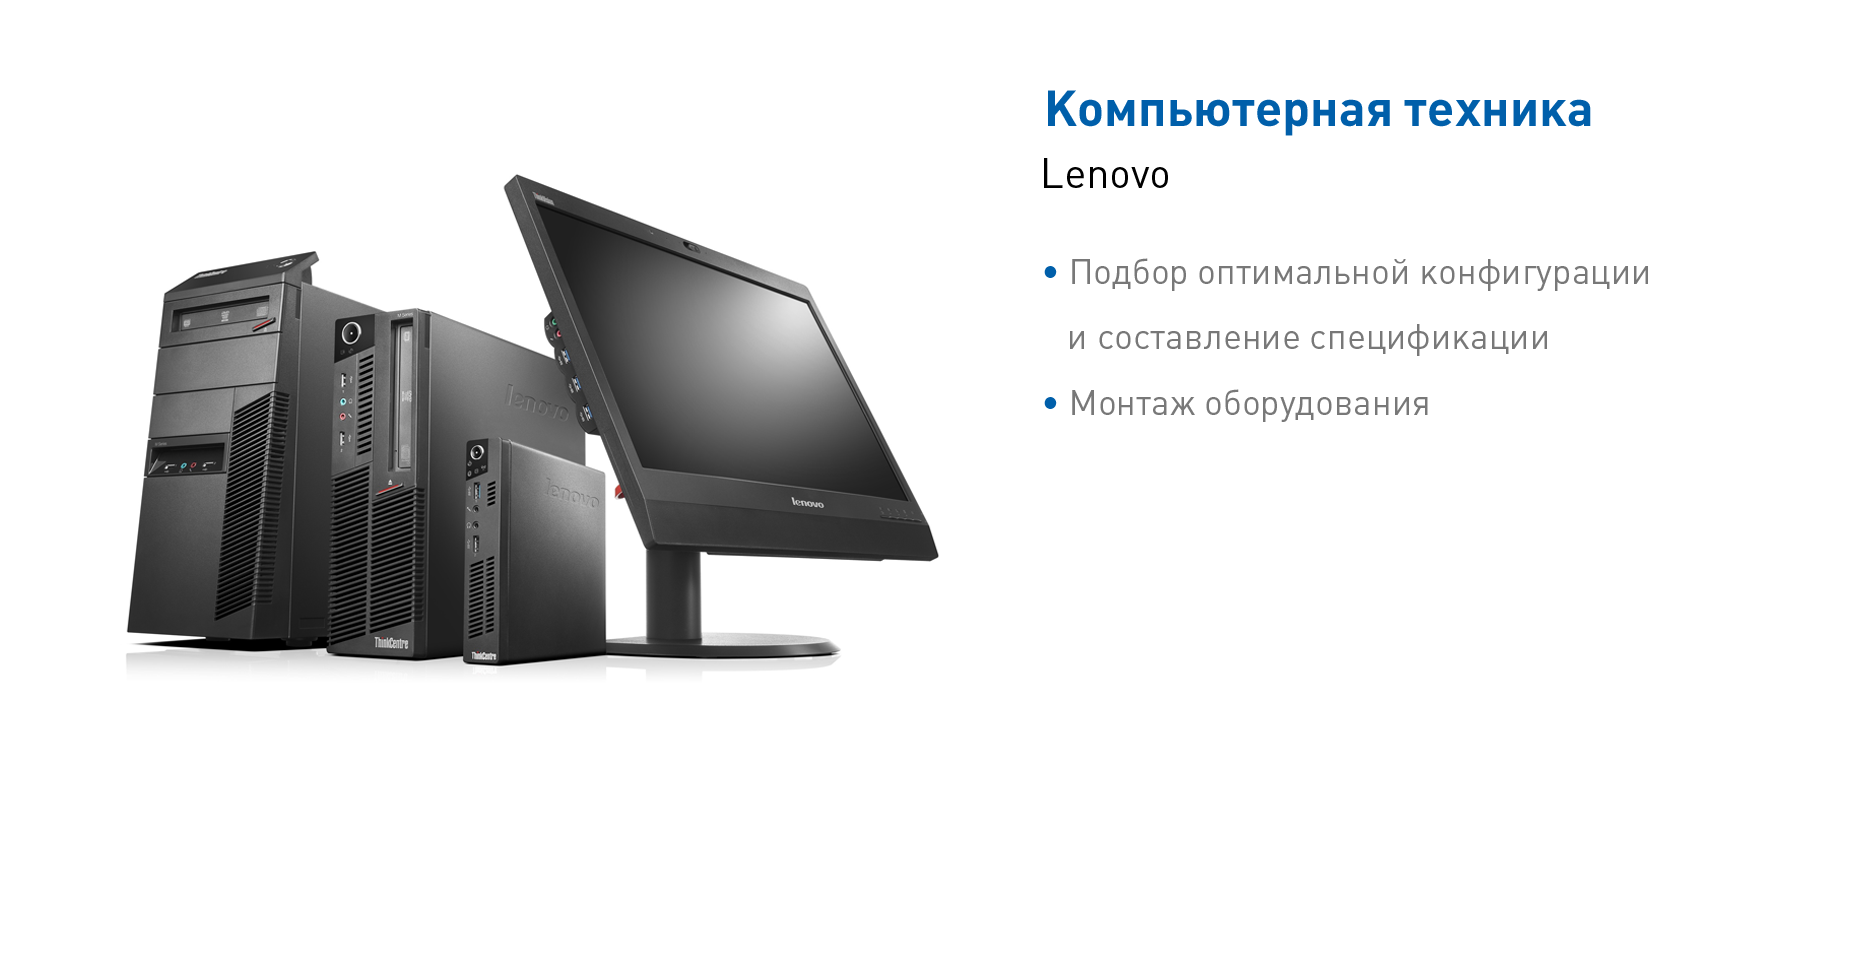 Компьютерная техника Lenovo